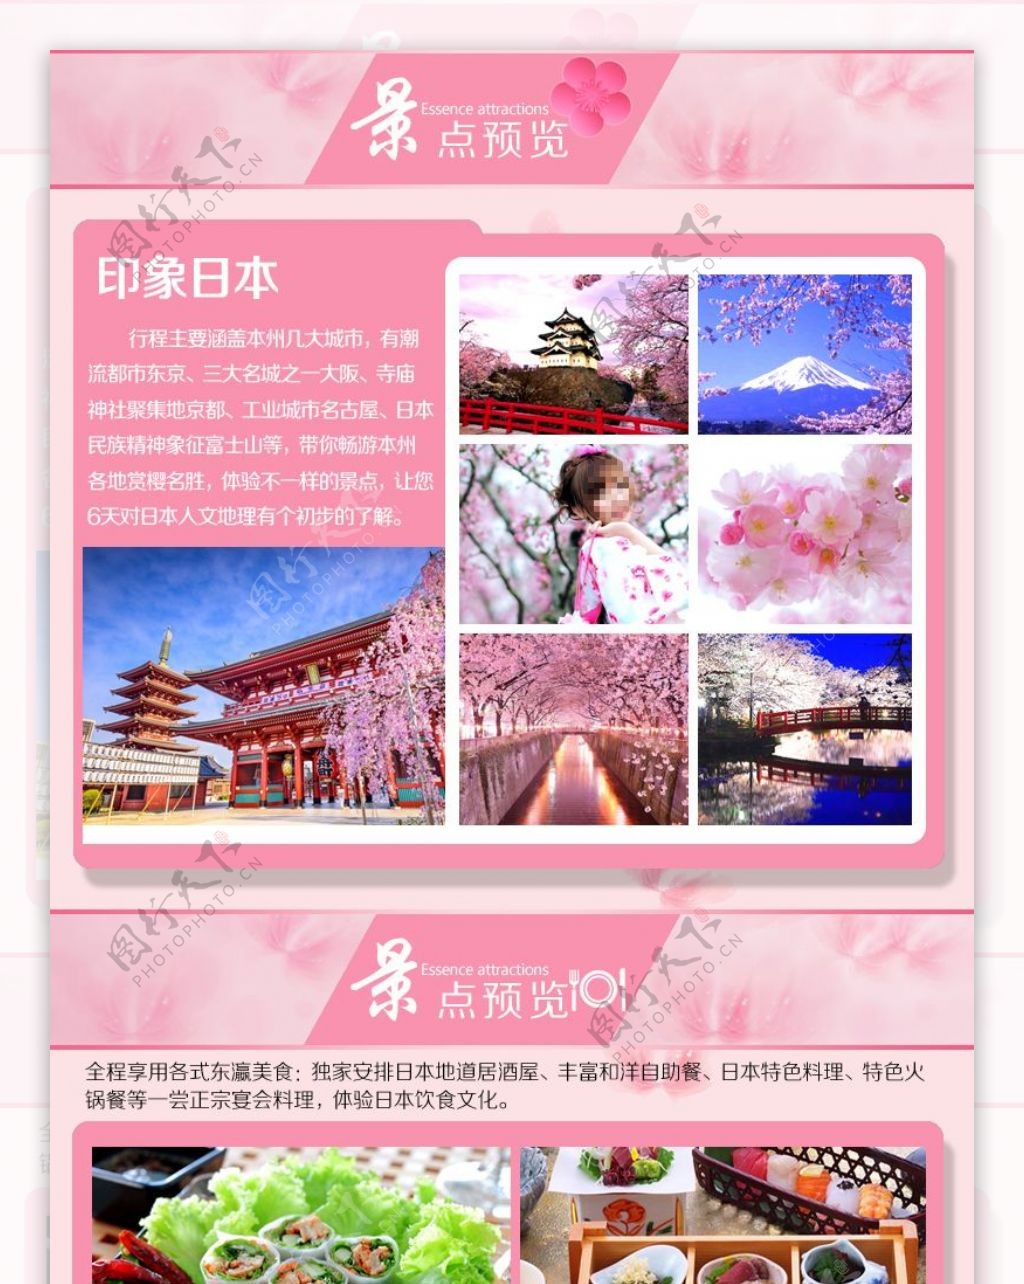 淘宝宝贝日本樱花之旅详情页亮点设计幽梦轩